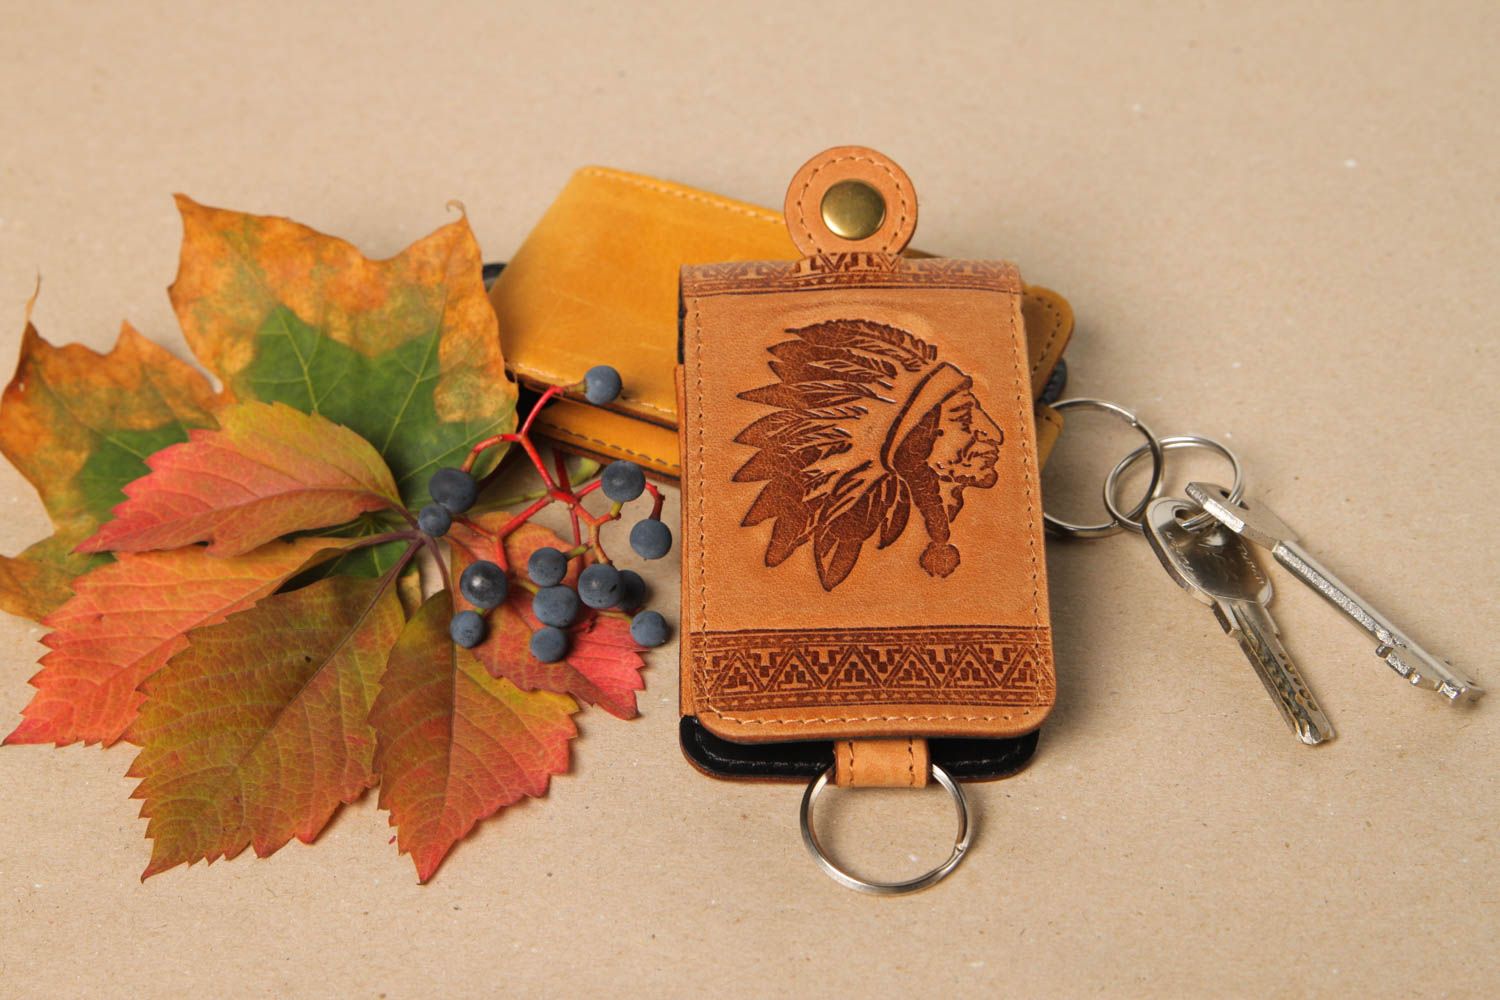 Stylish handmade leather key case unusual key holder design best gift ideas photo 1